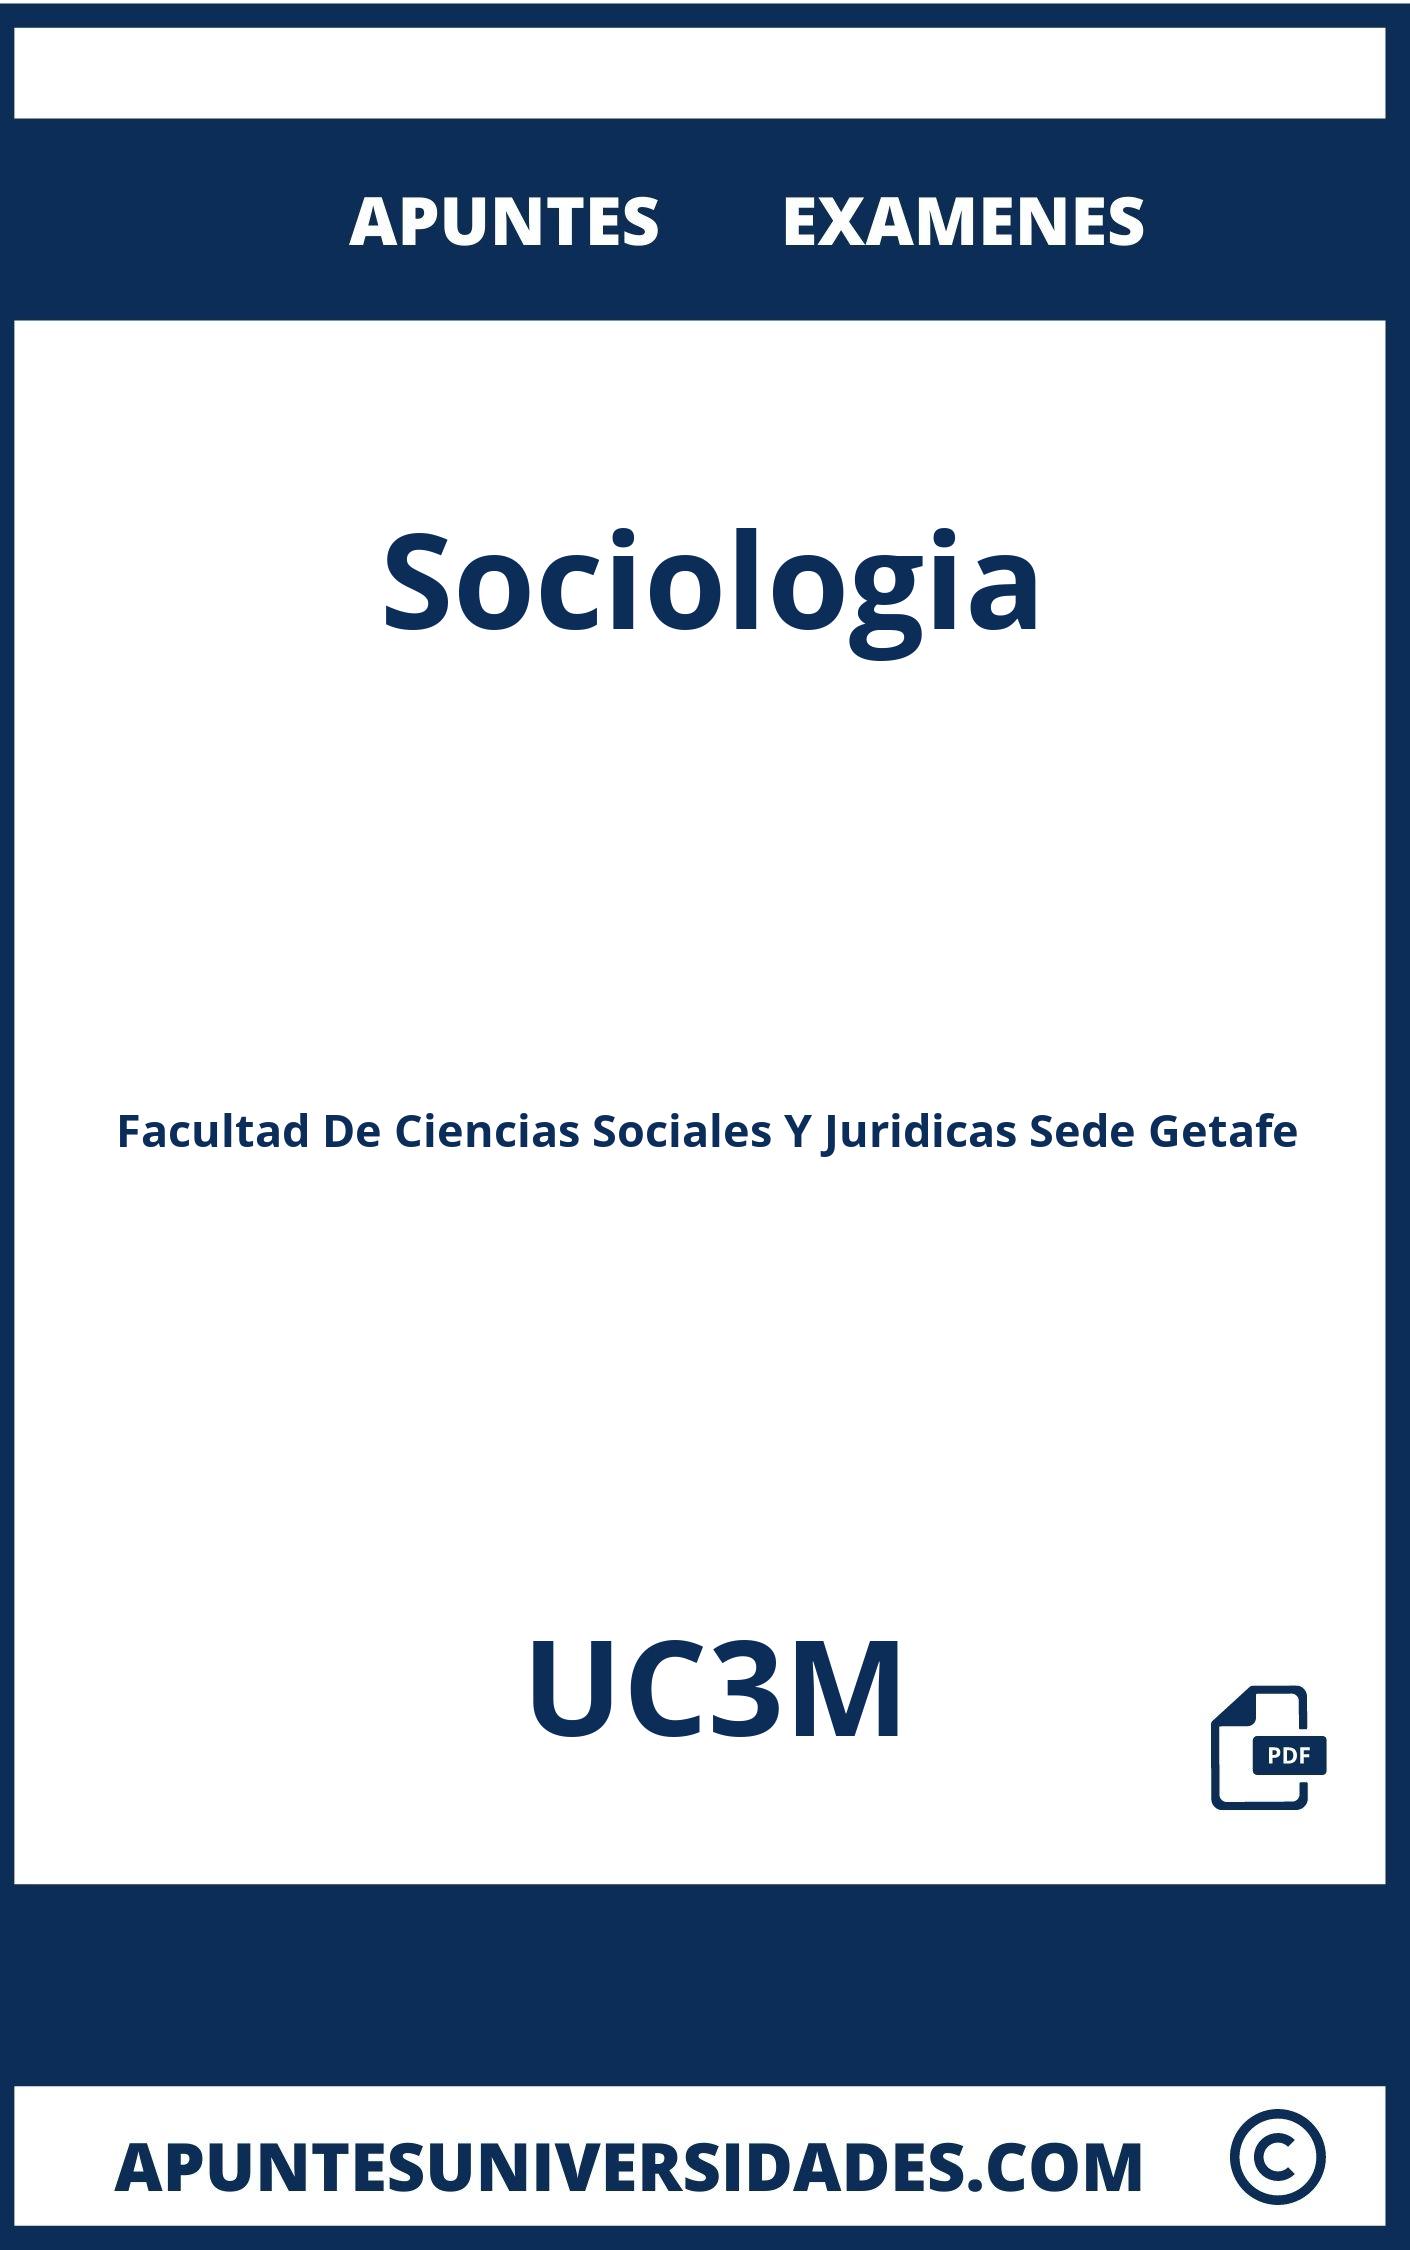 Examenes Apuntes Sociologia UC3M